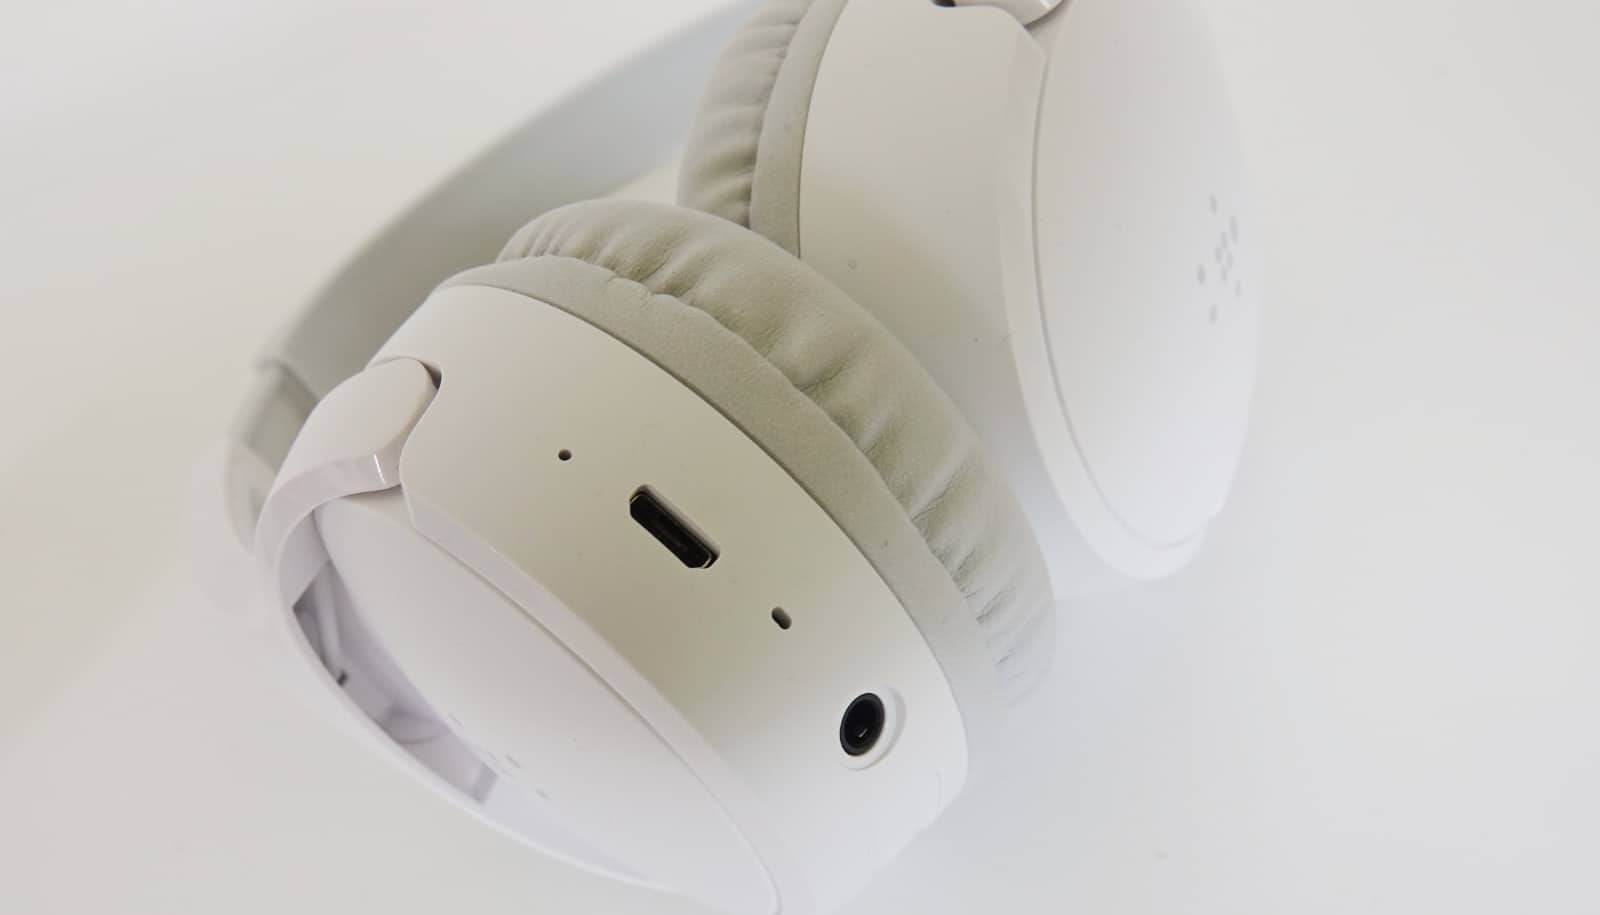 Belkin Soundform Mini Wireless headphones review – Pickr